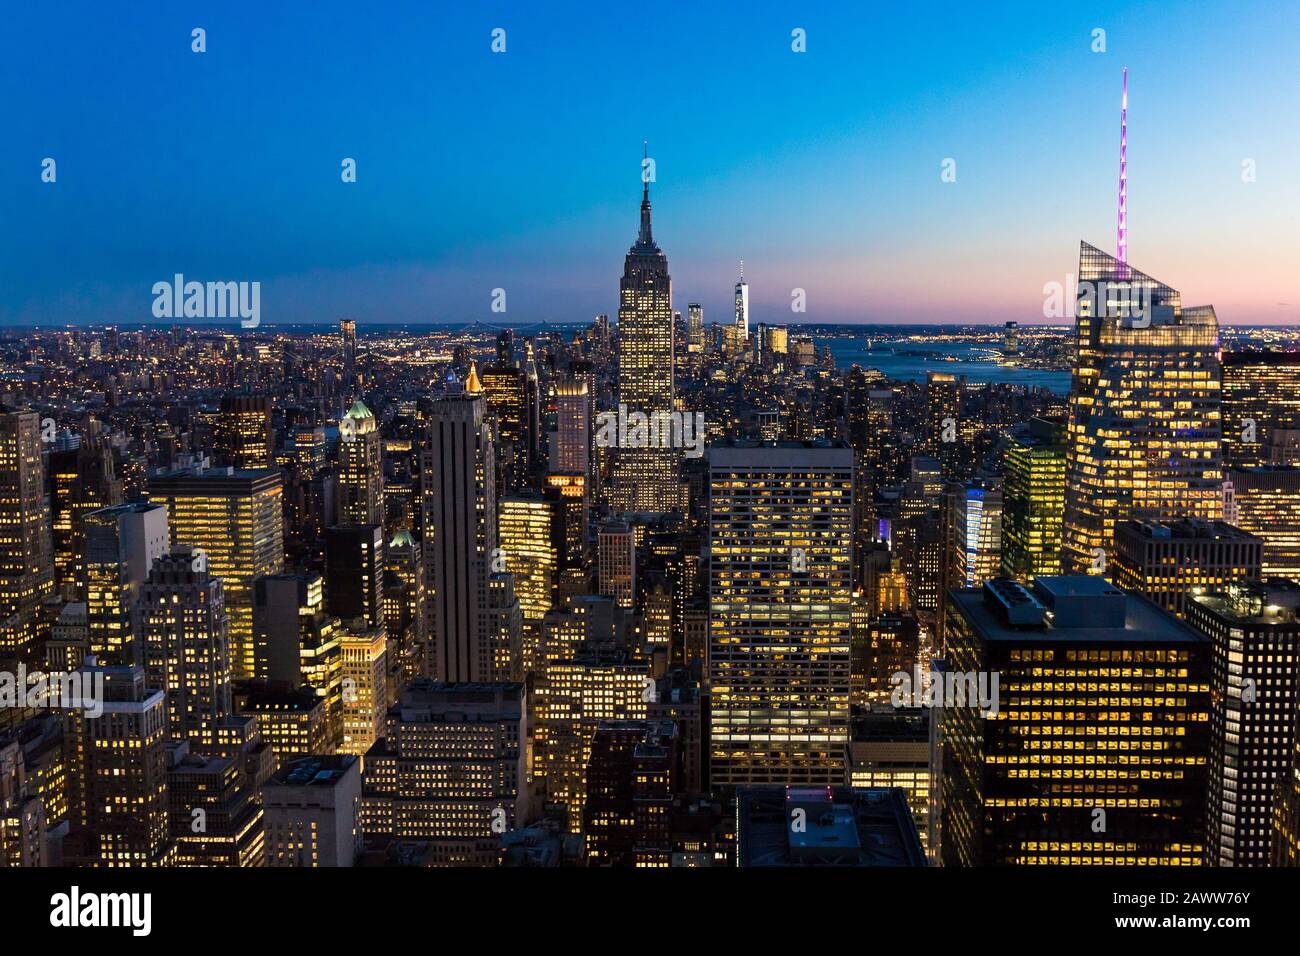 Skyline de la ciudad de Nueva York en el centro de Manhattan con Empire State Building y rascacielos por la noche en los EE.UU. Foto de stock